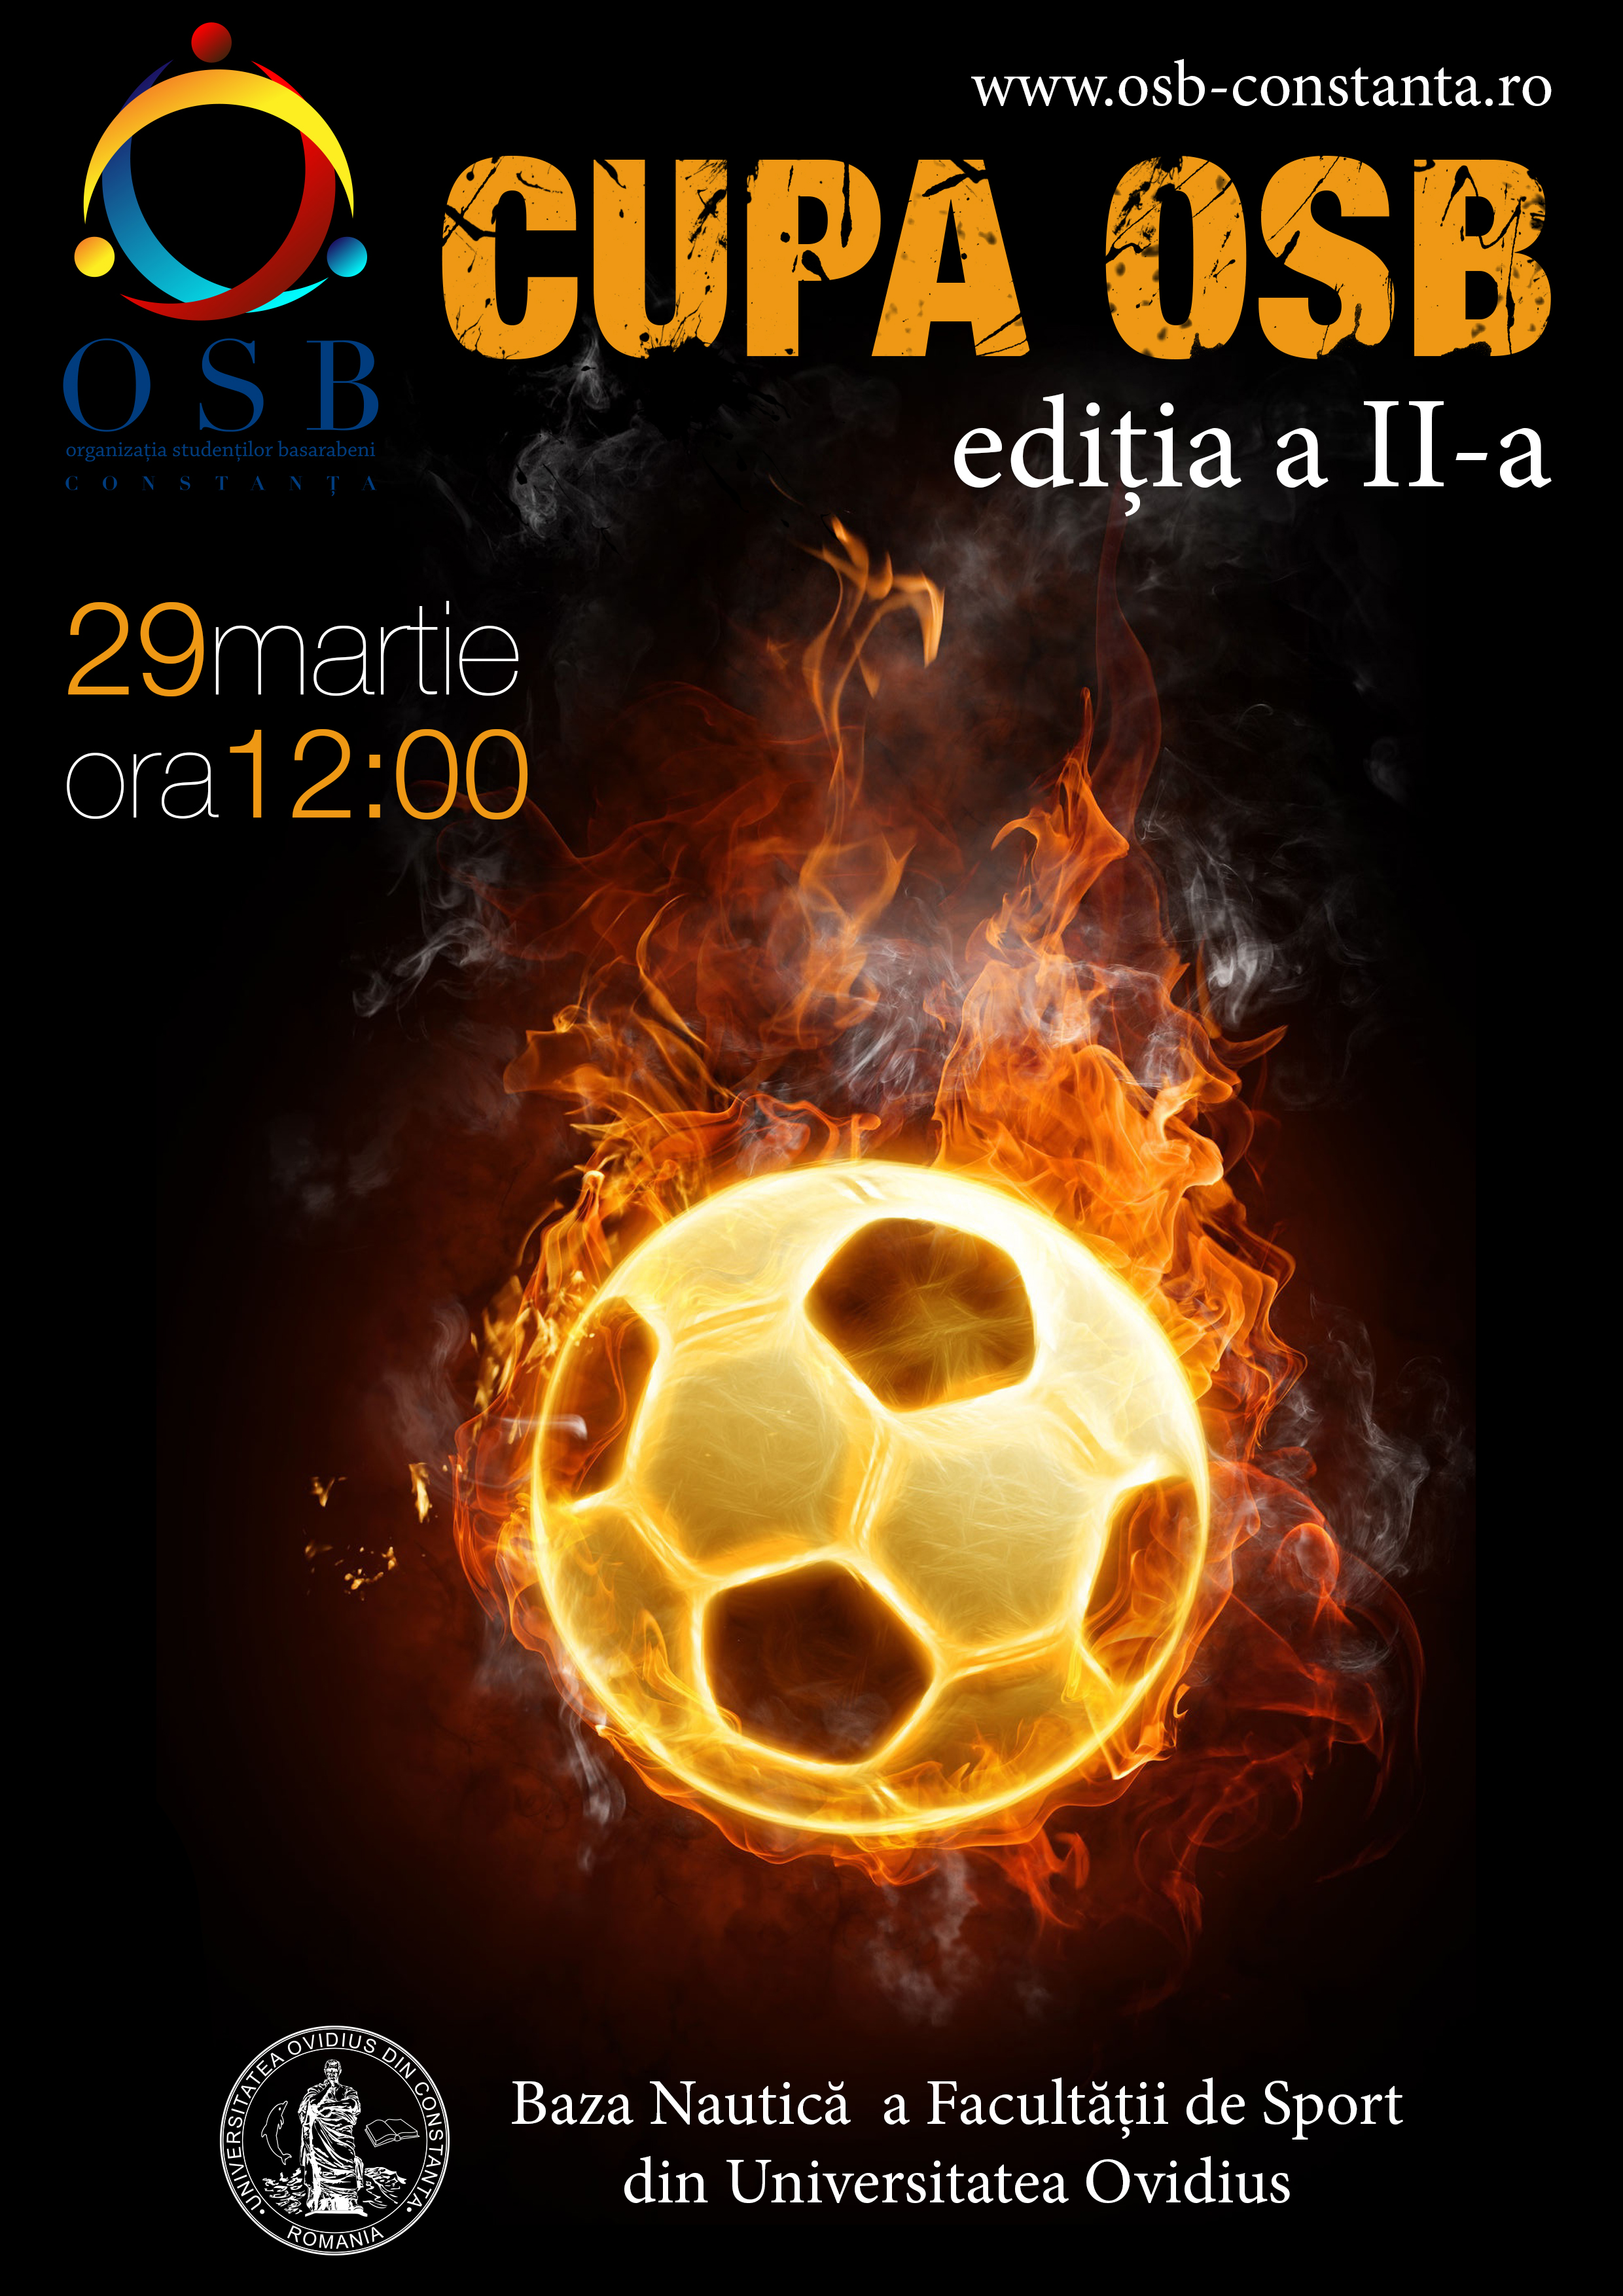 football cup poster/постер для футбольного турнира